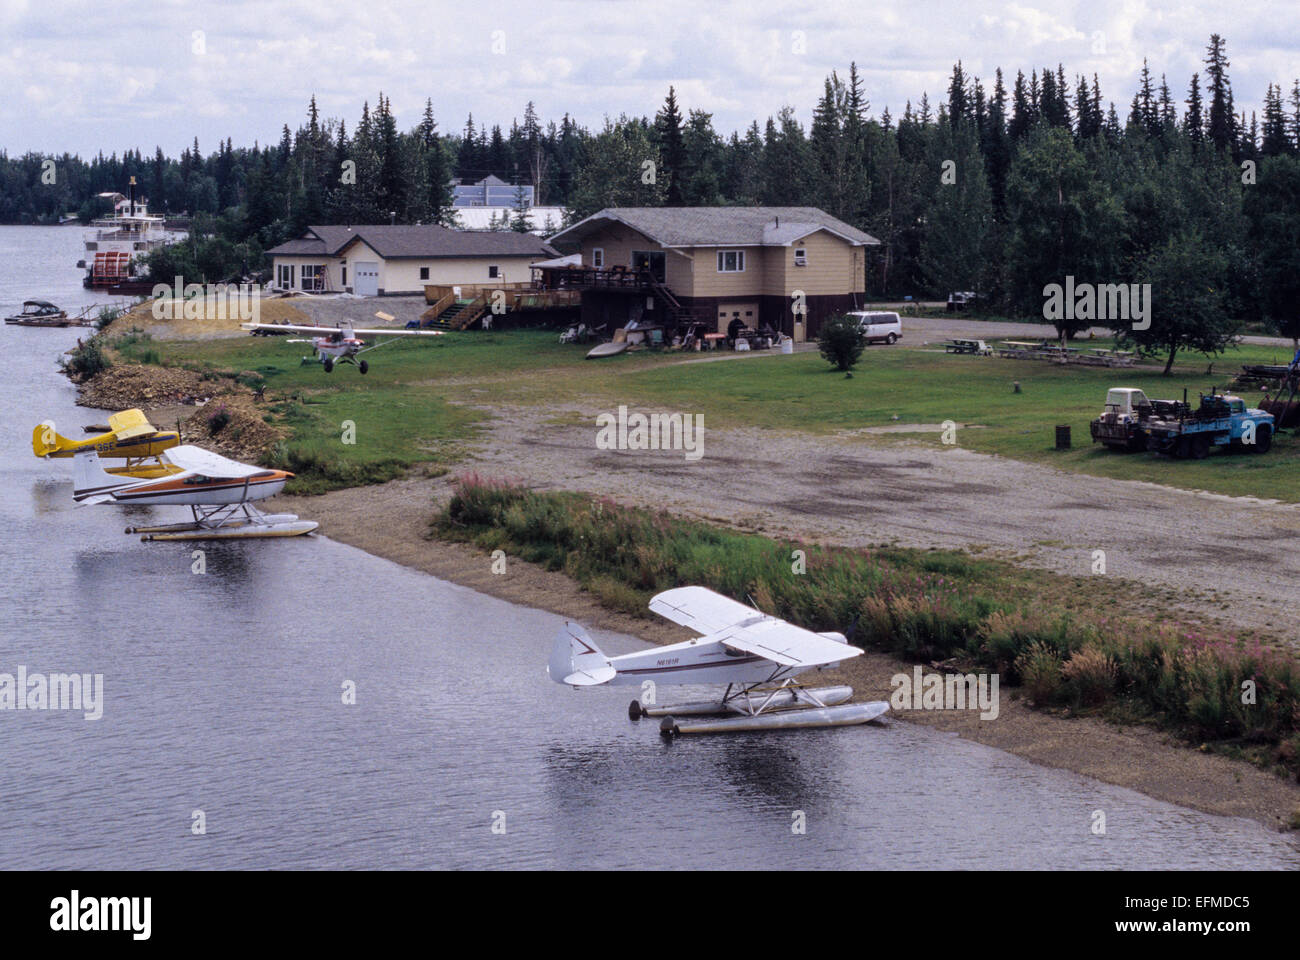 Fairbanks, Alaska, rivière Tanana. Les avions dans votre cour avant : une entrée pour l'atterrissage. Les hydravions dans la rivière Tanana. Banque D'Images